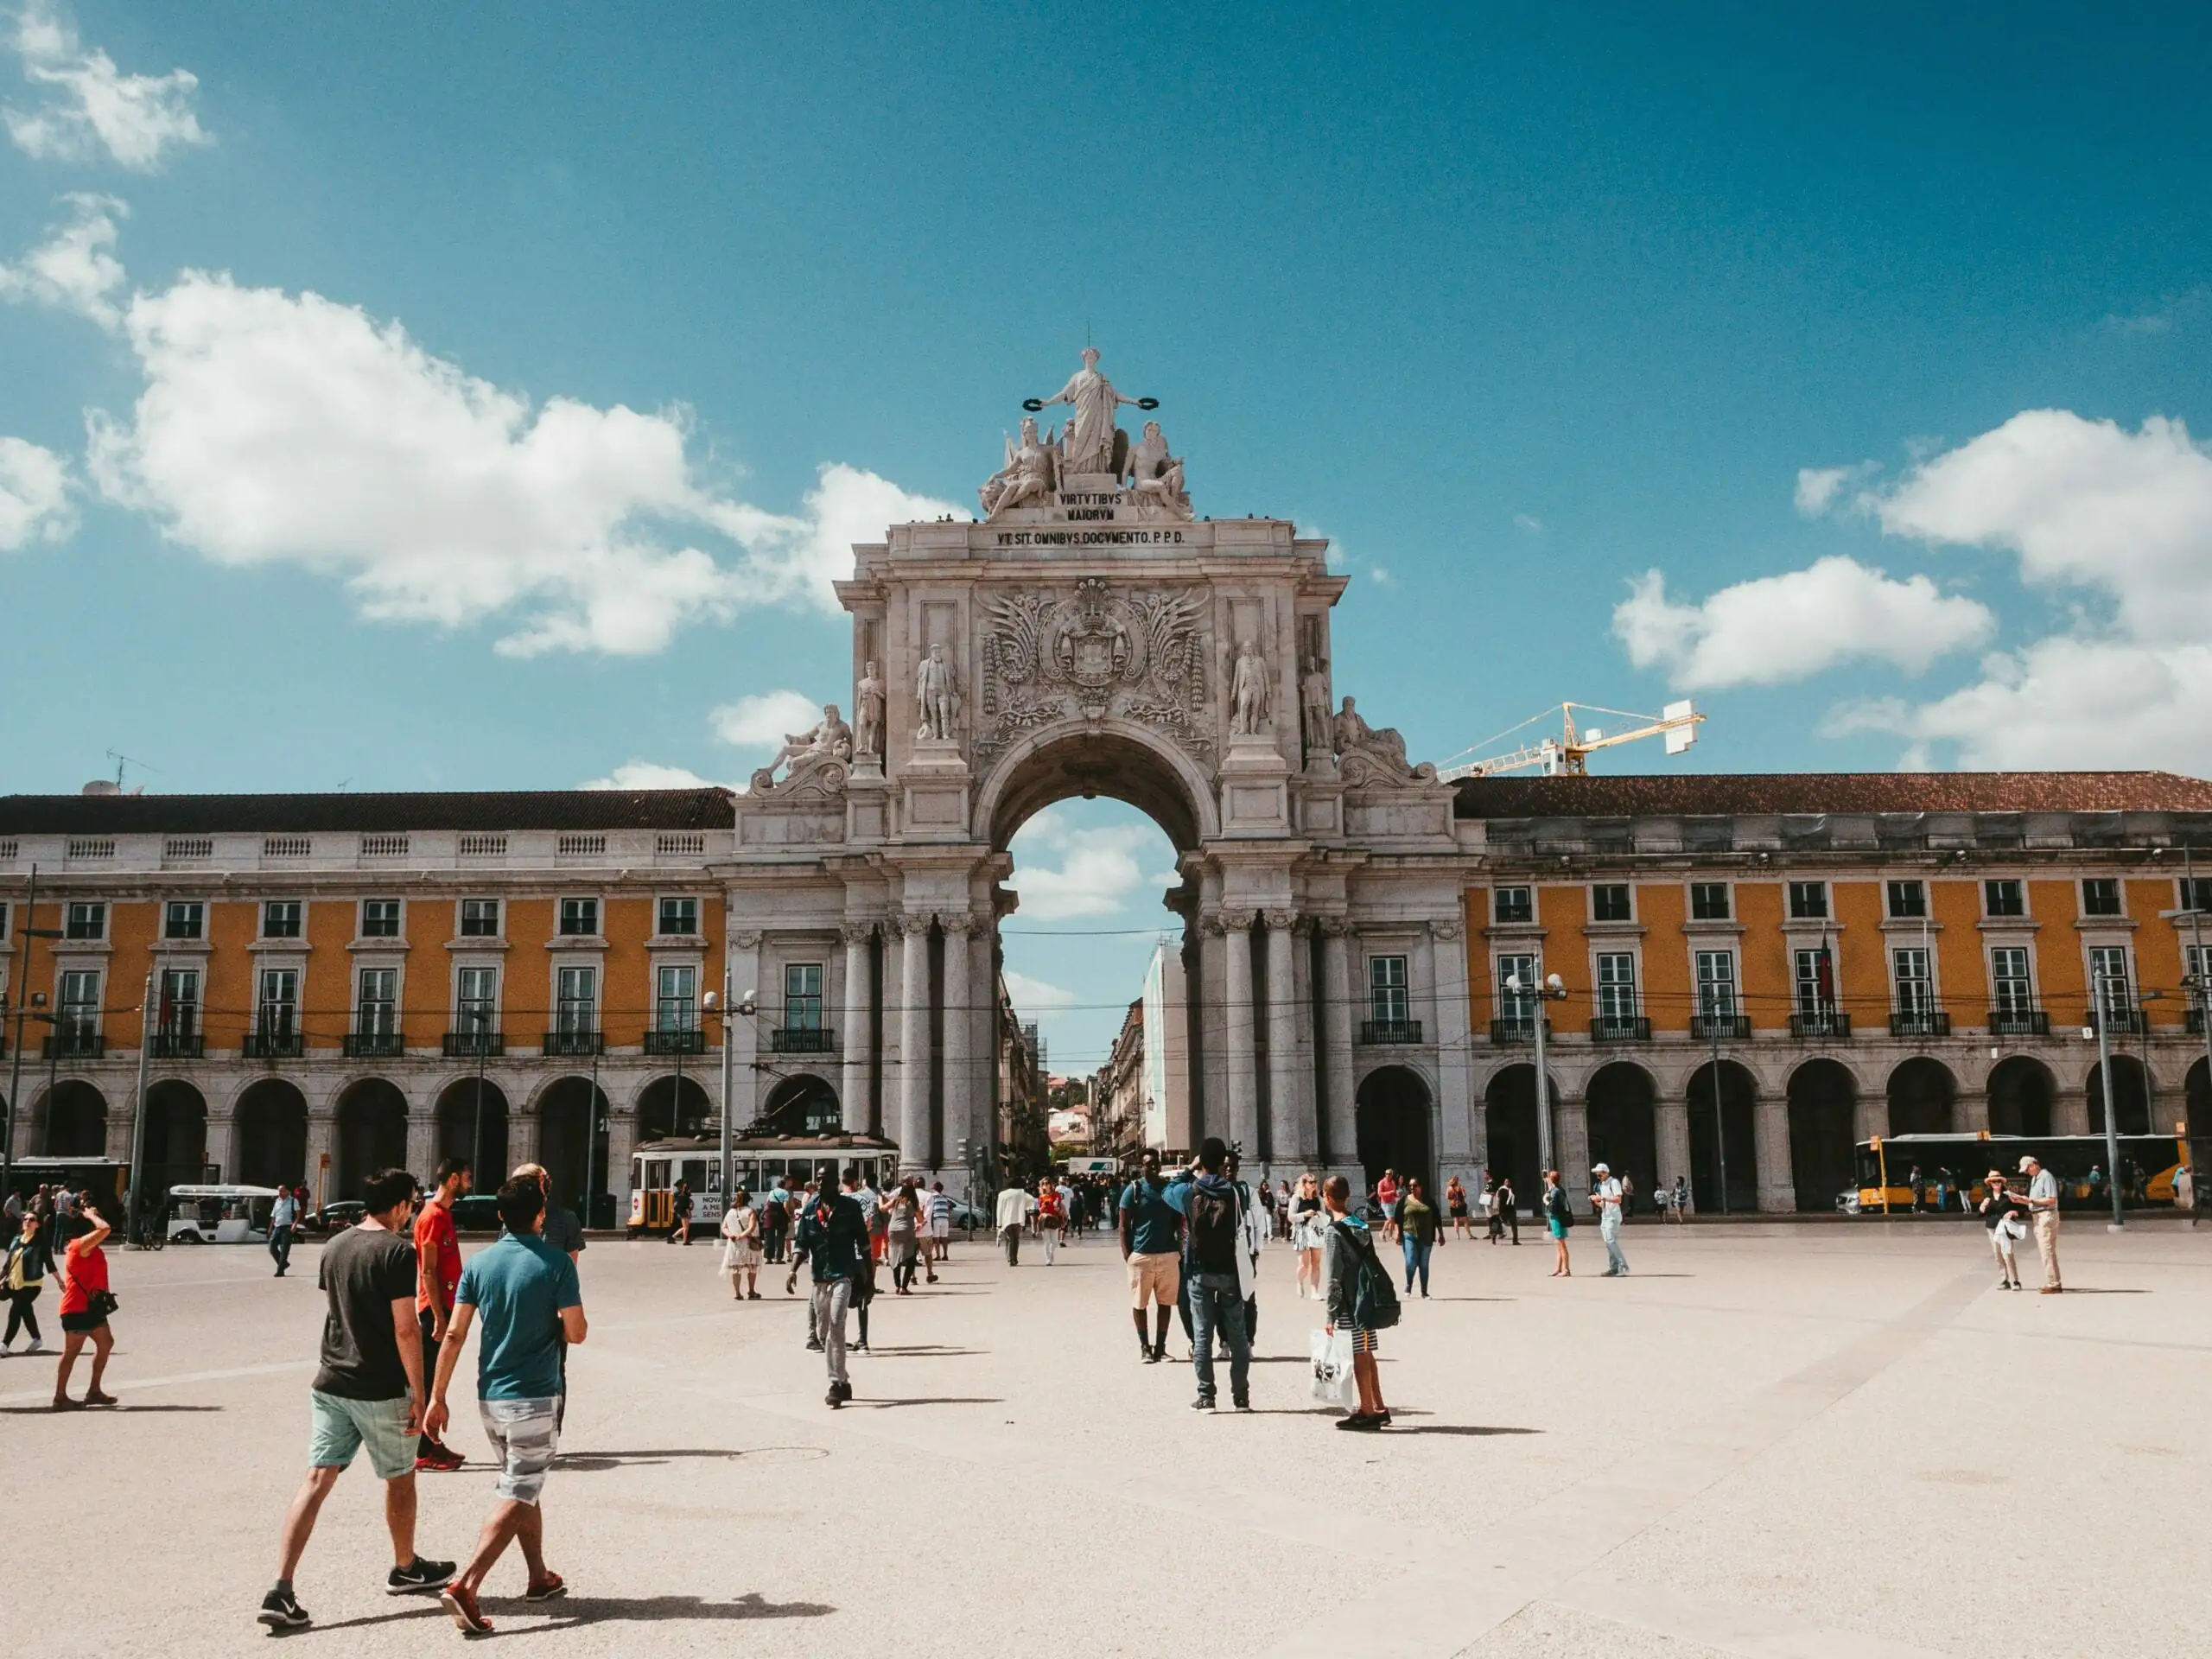 Praça do Comércio, Baixa, Lisbon